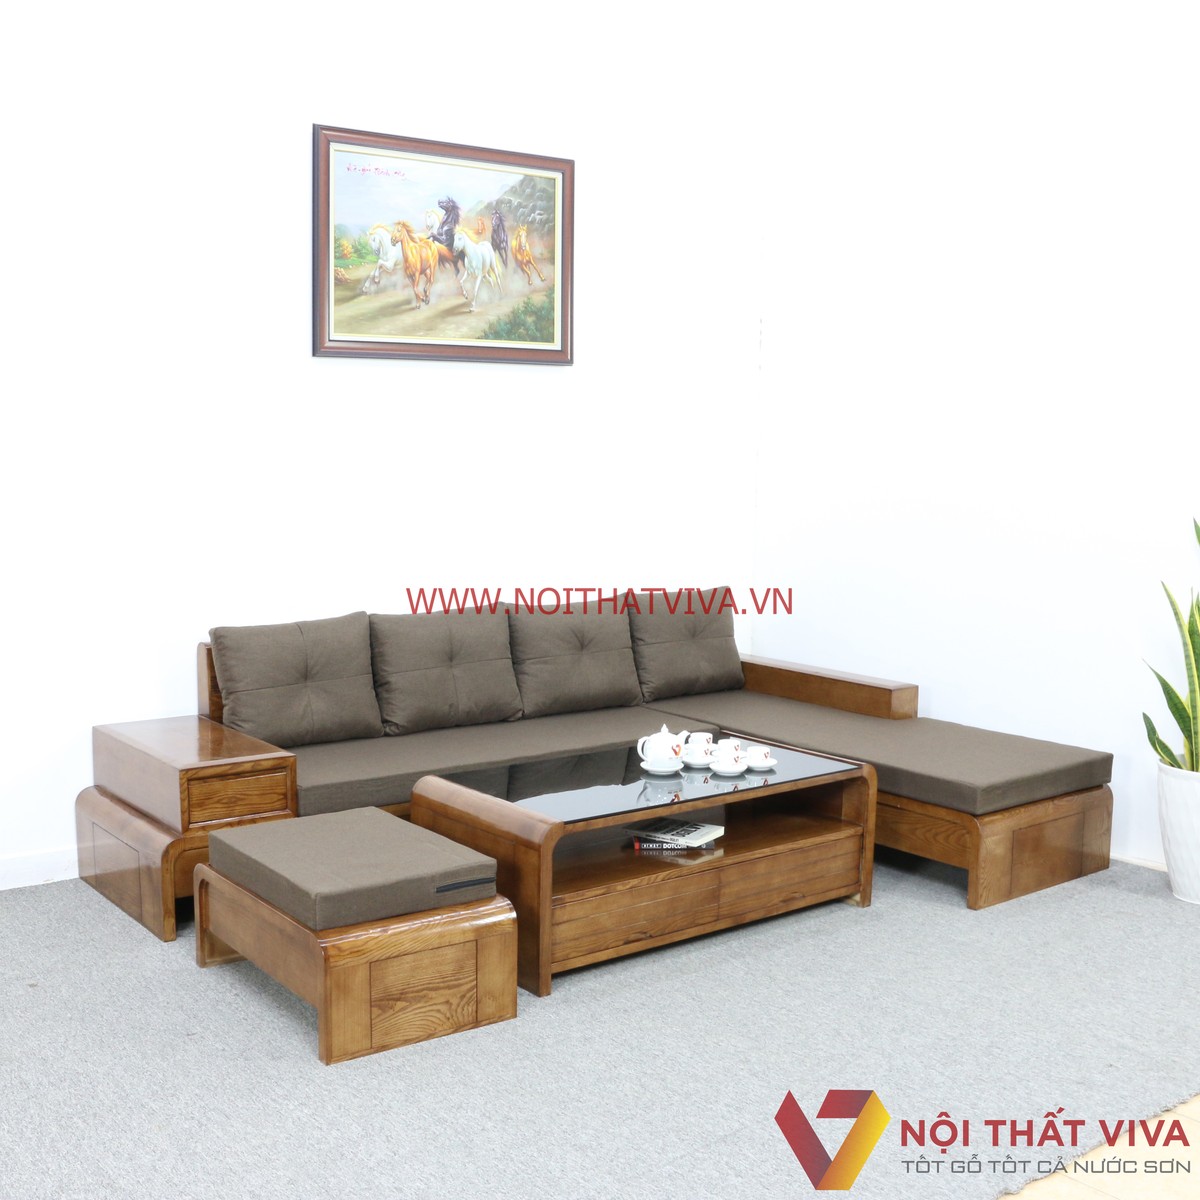 Bàn ghế gỗ góc cho phòng khách nhỏ sẽ giúp tối đa hóa diện tích của căn phòng và mang lại sự tiện ích và tinh tế cho không gian sống của bạn. Với thiết kế thông minh và chất liệu gỗ cao cấp, bộ sản phẩm này sẽ là sự lựa chọn đẳng cấp cho mọi gia đình.